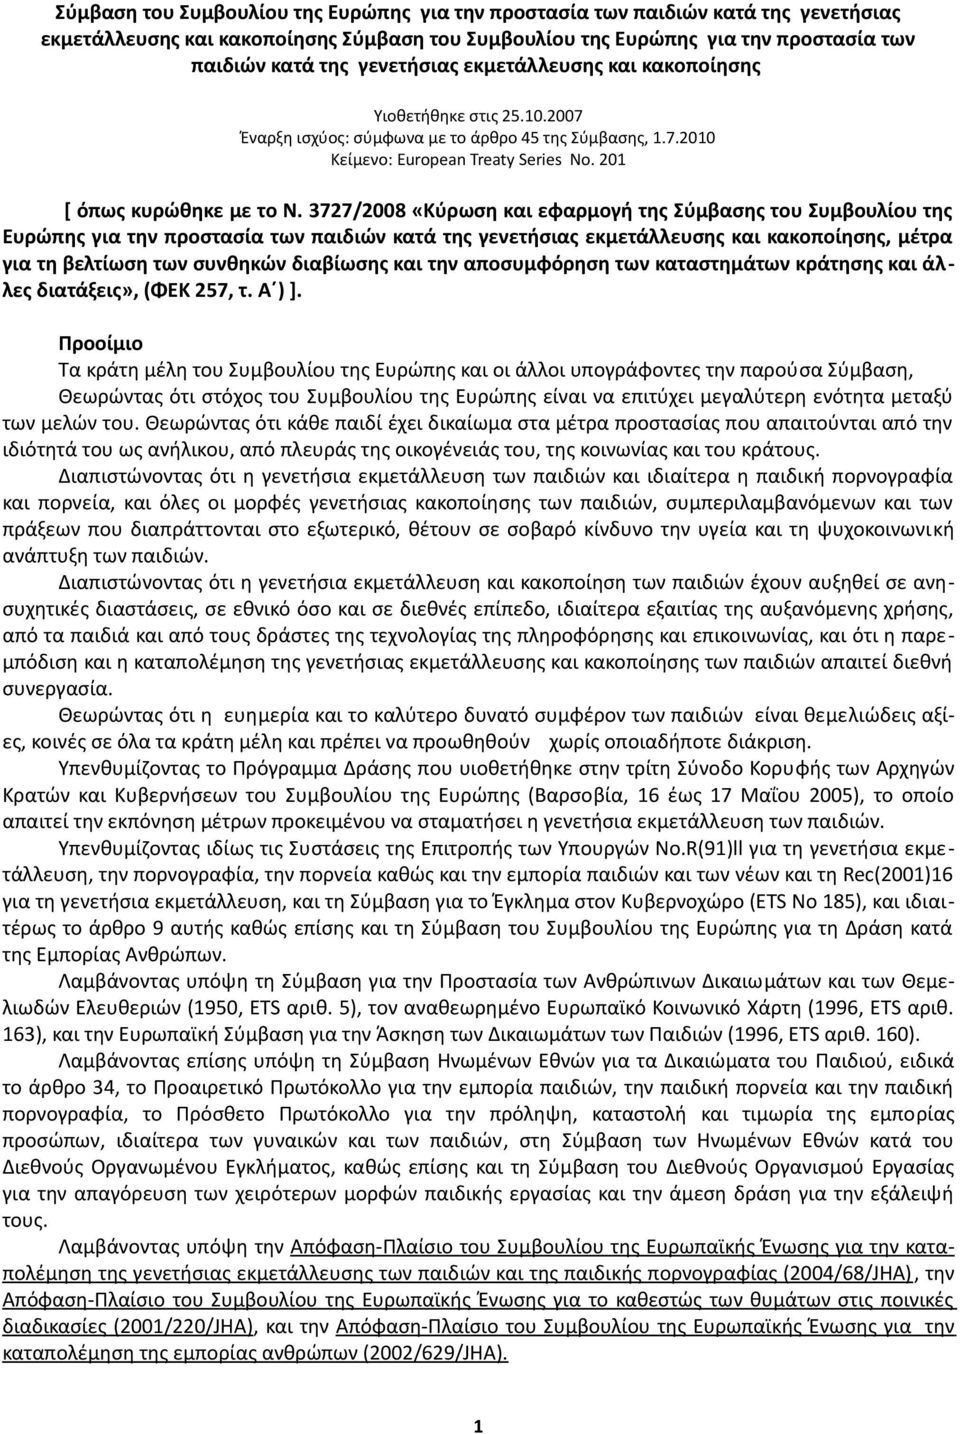 3727/2008 «Κύρωση και εφαρμογή της Σύμβασης του Συμβουλίου της Ευρώπης για την προστασία των παιδιών κατά της γενετήσιας εκμετάλλευσης και κακοποίησης, μέτρα για τη βελτίωση των συνθηκών διαβίωσης